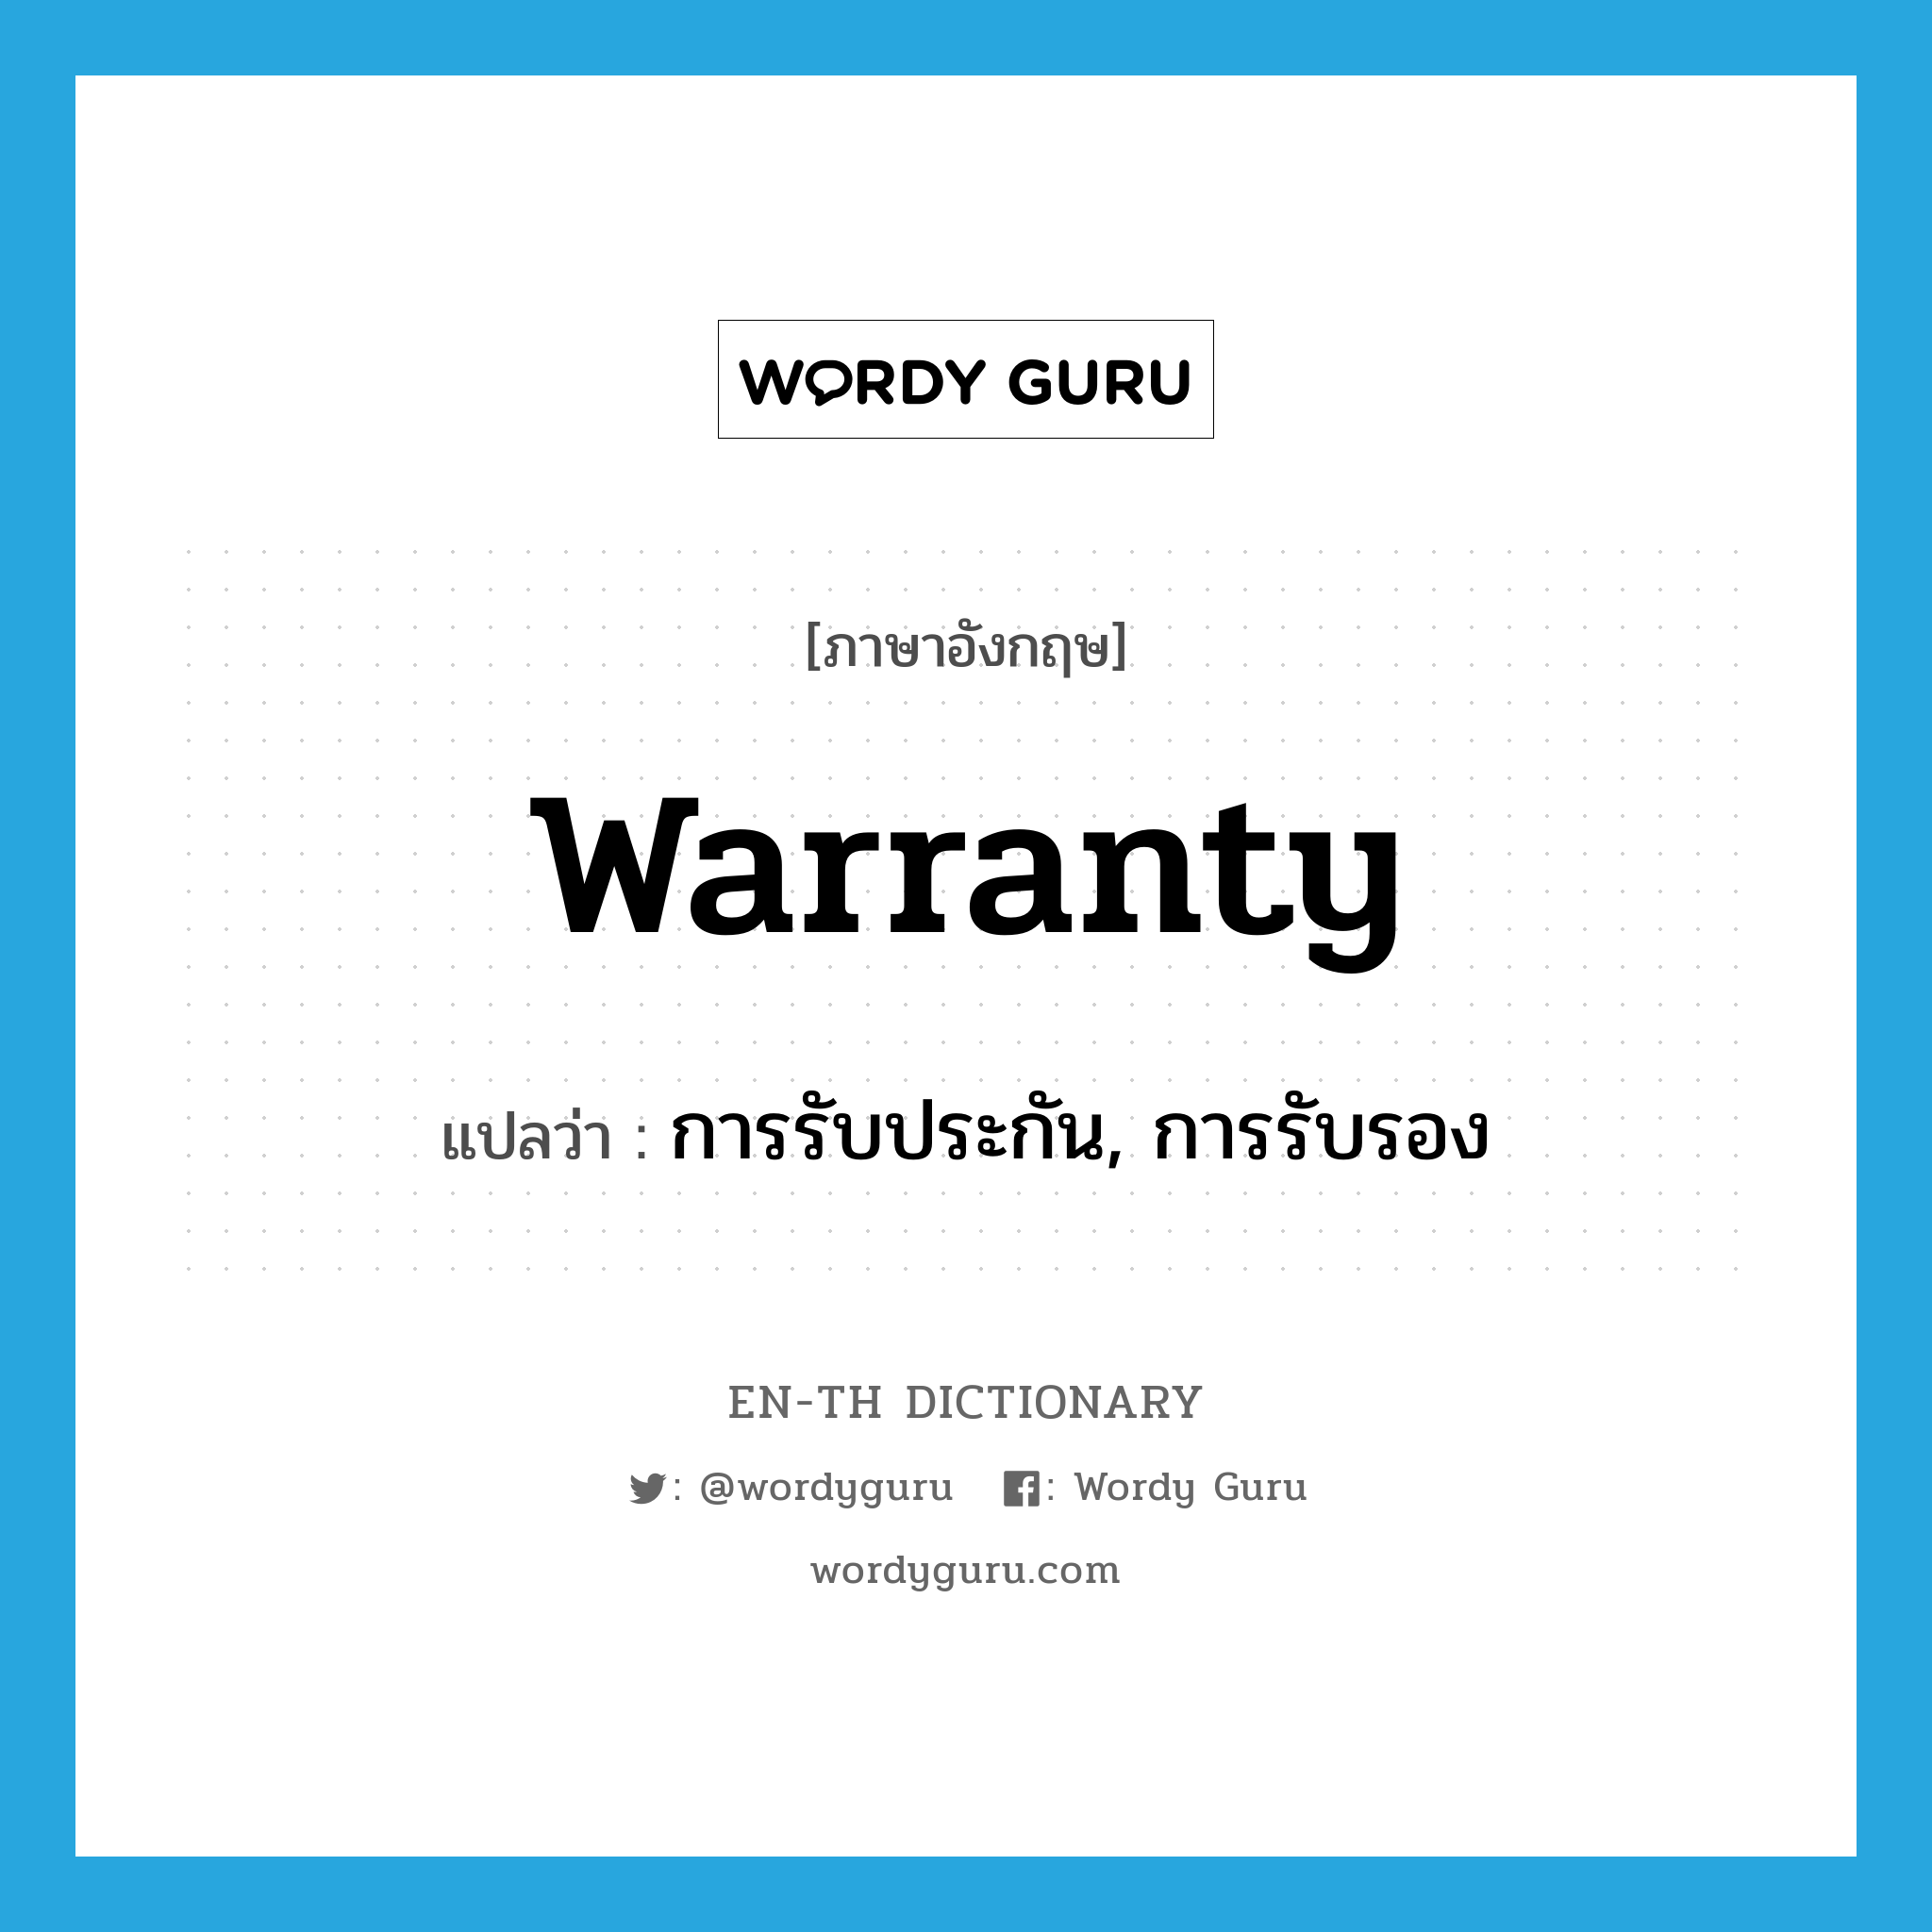 การรับประกัน, การรับรอง ภาษาอังกฤษ?, คำศัพท์ภาษาอังกฤษ การรับประกัน, การรับรอง แปลว่า warranty ประเภท N หมวด N